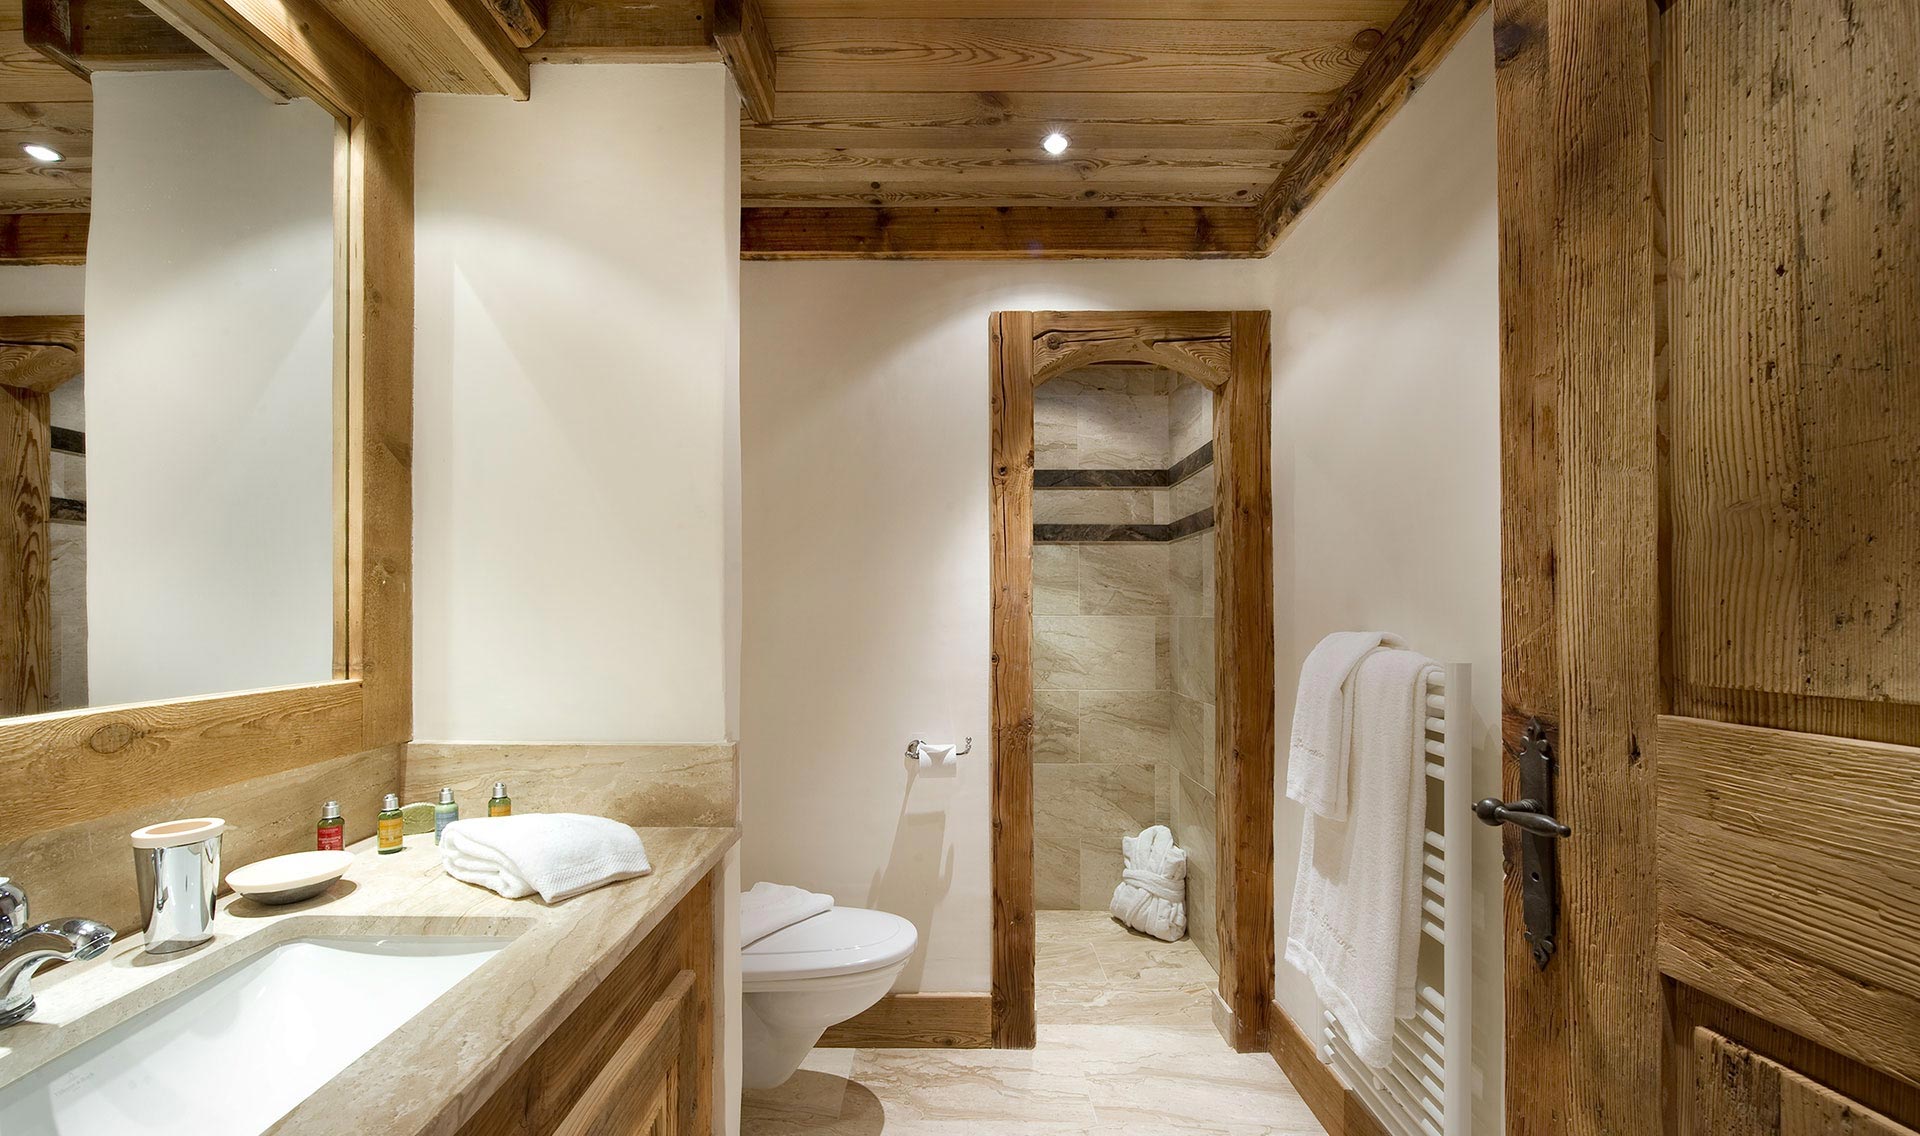 ideja lijepog dizajna kupaonice u drvenoj kući